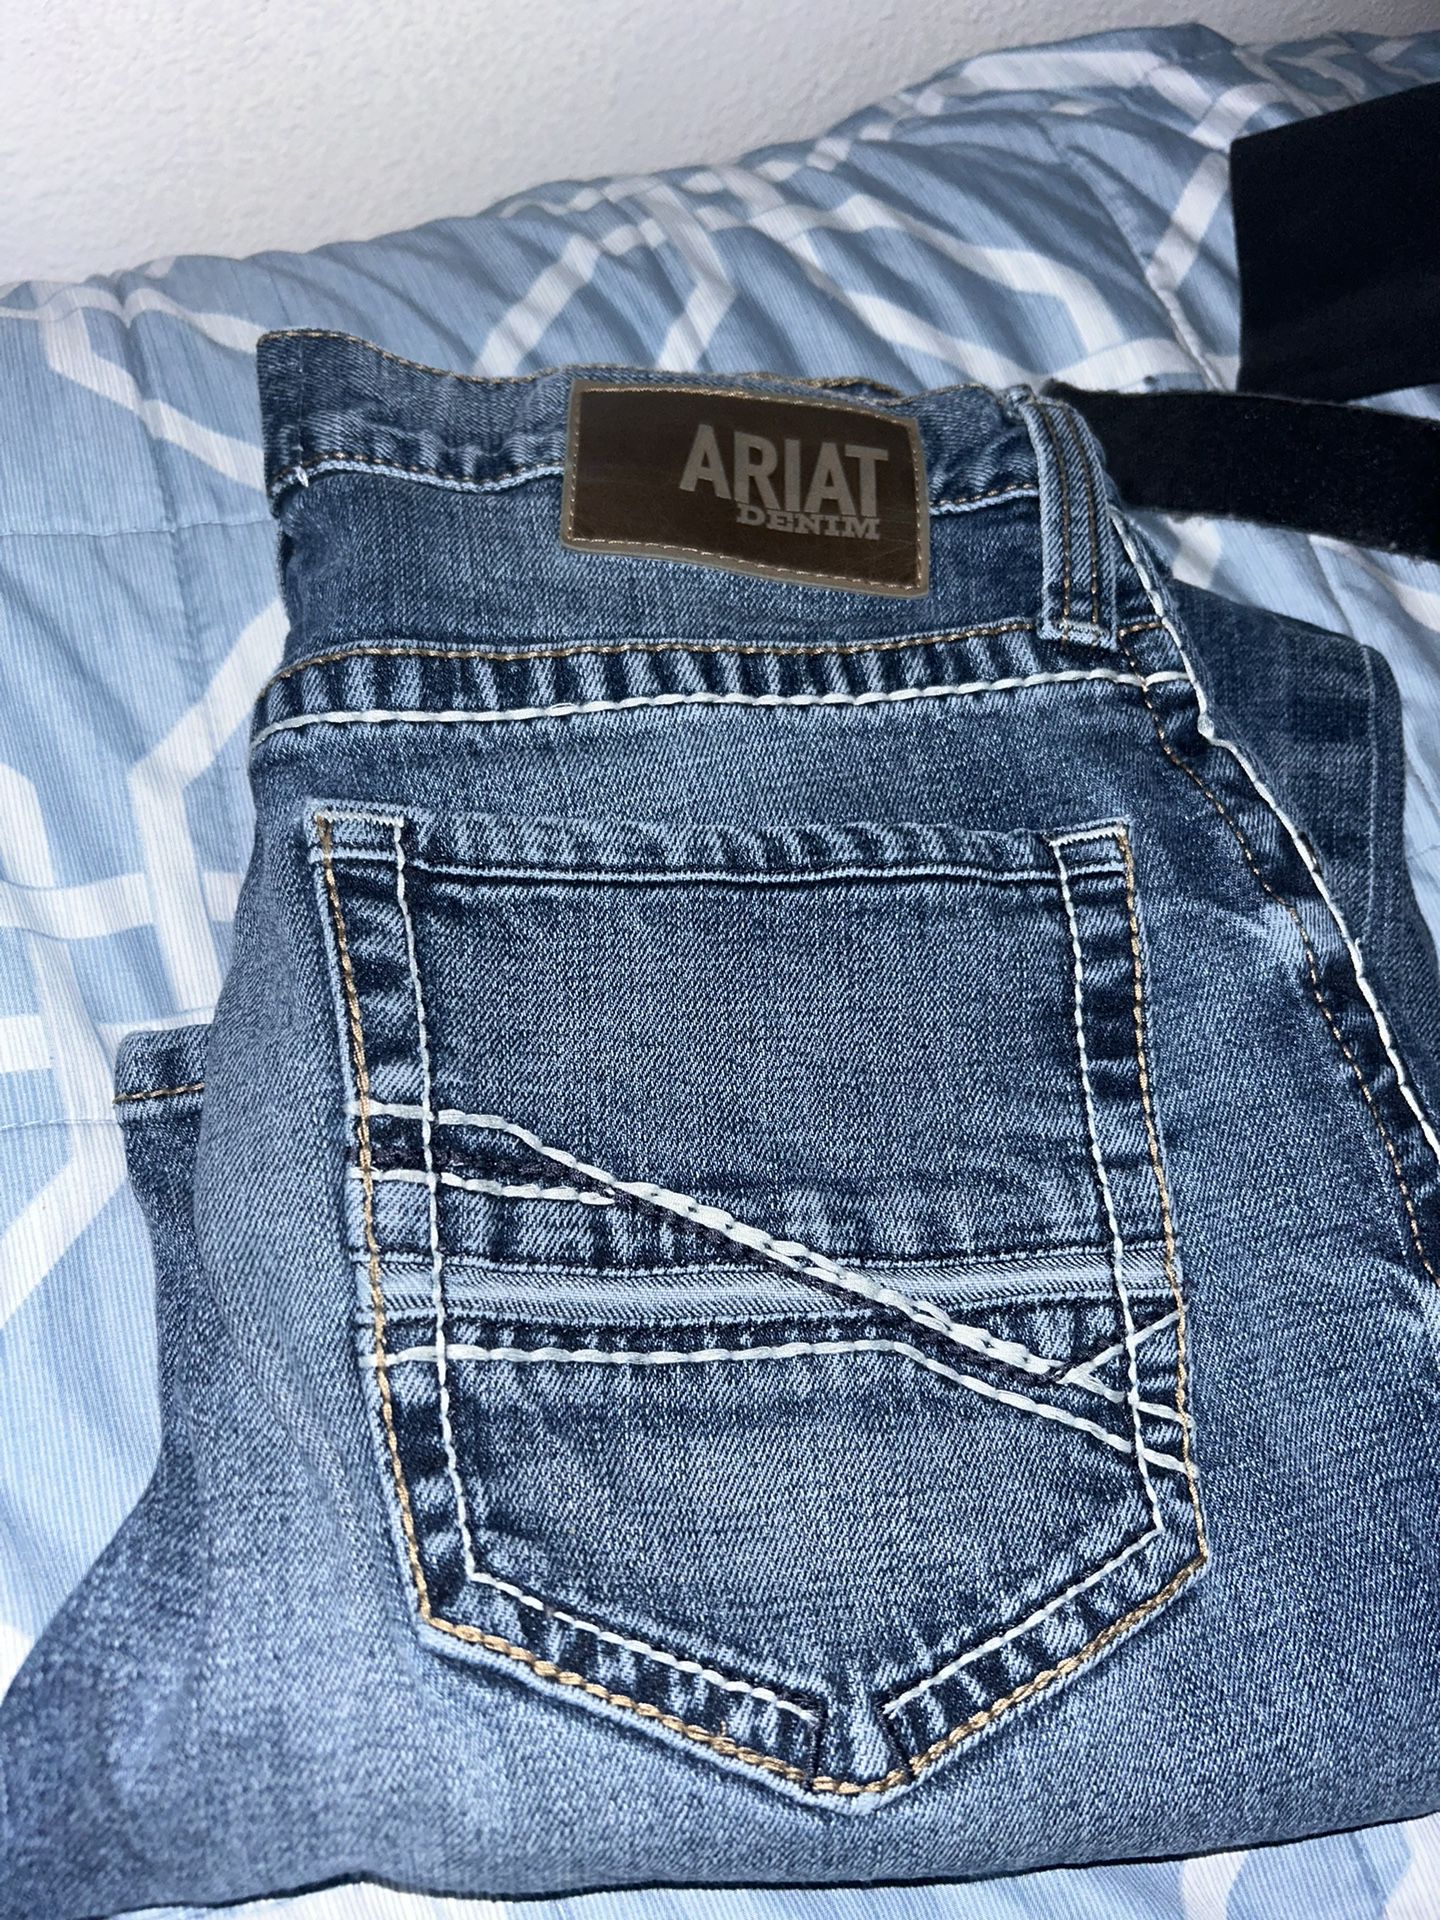 Ariat jeans 31/32 men’s 